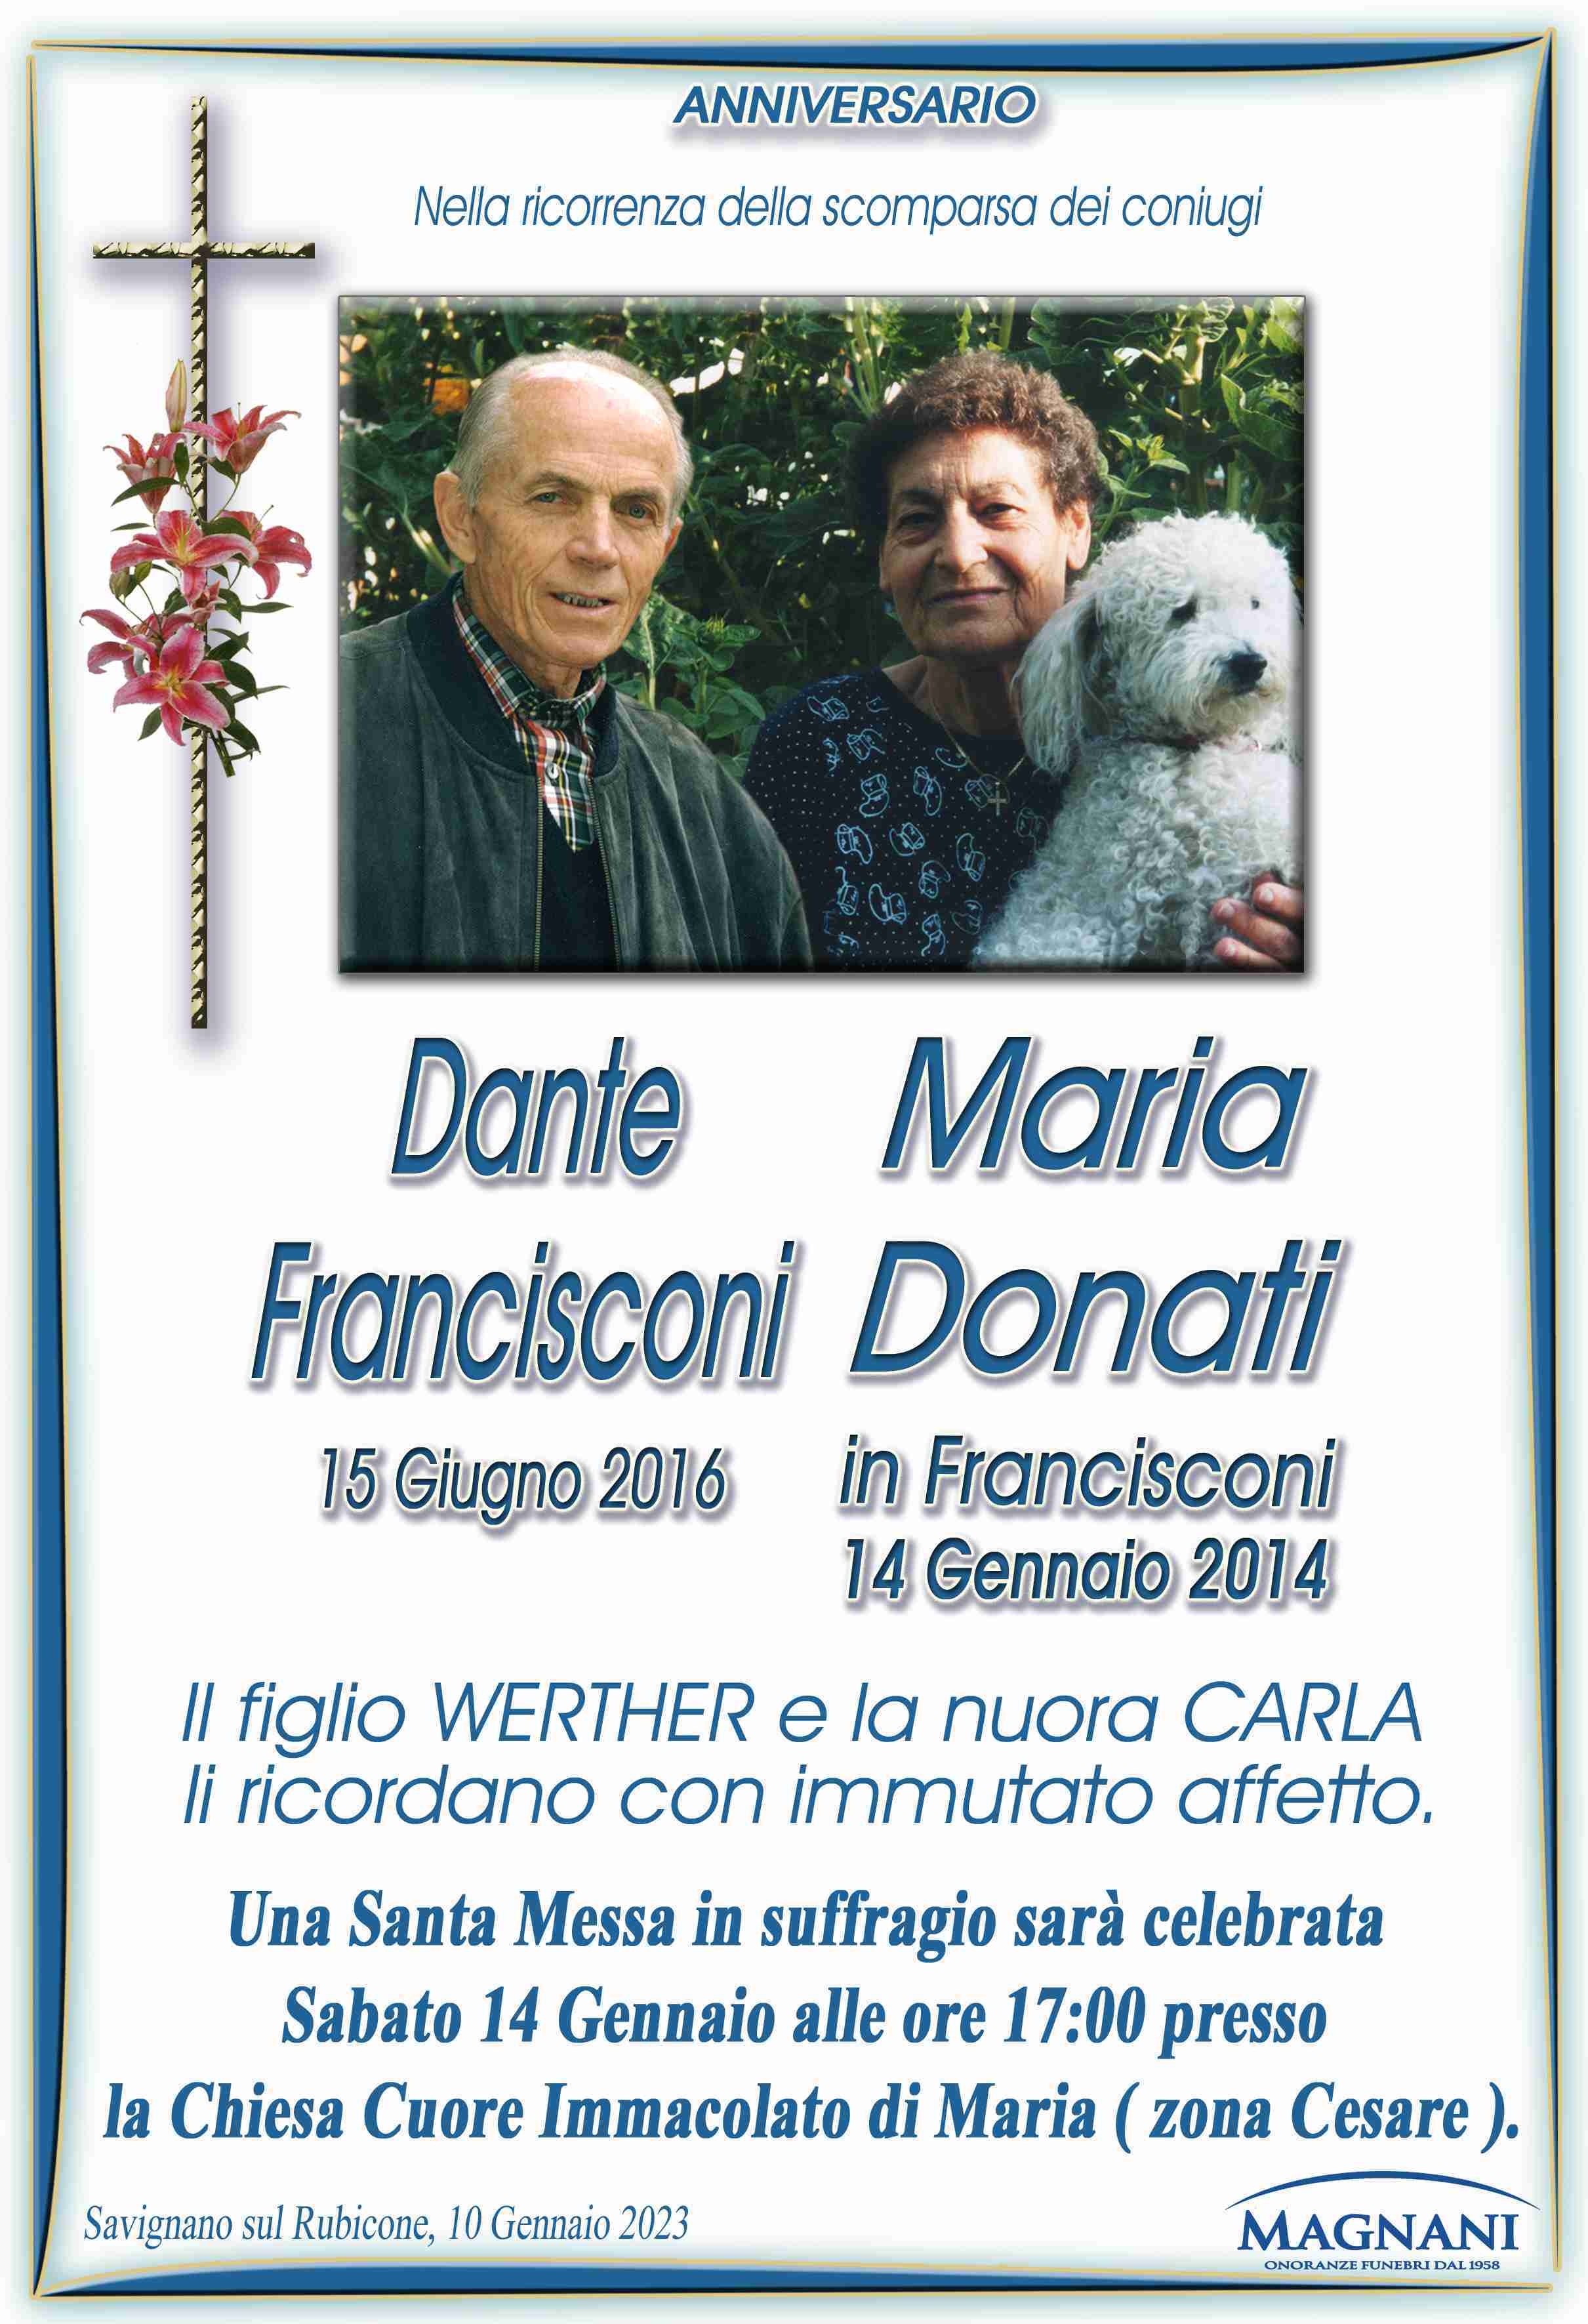 Dante Francisconi e Maria Donati